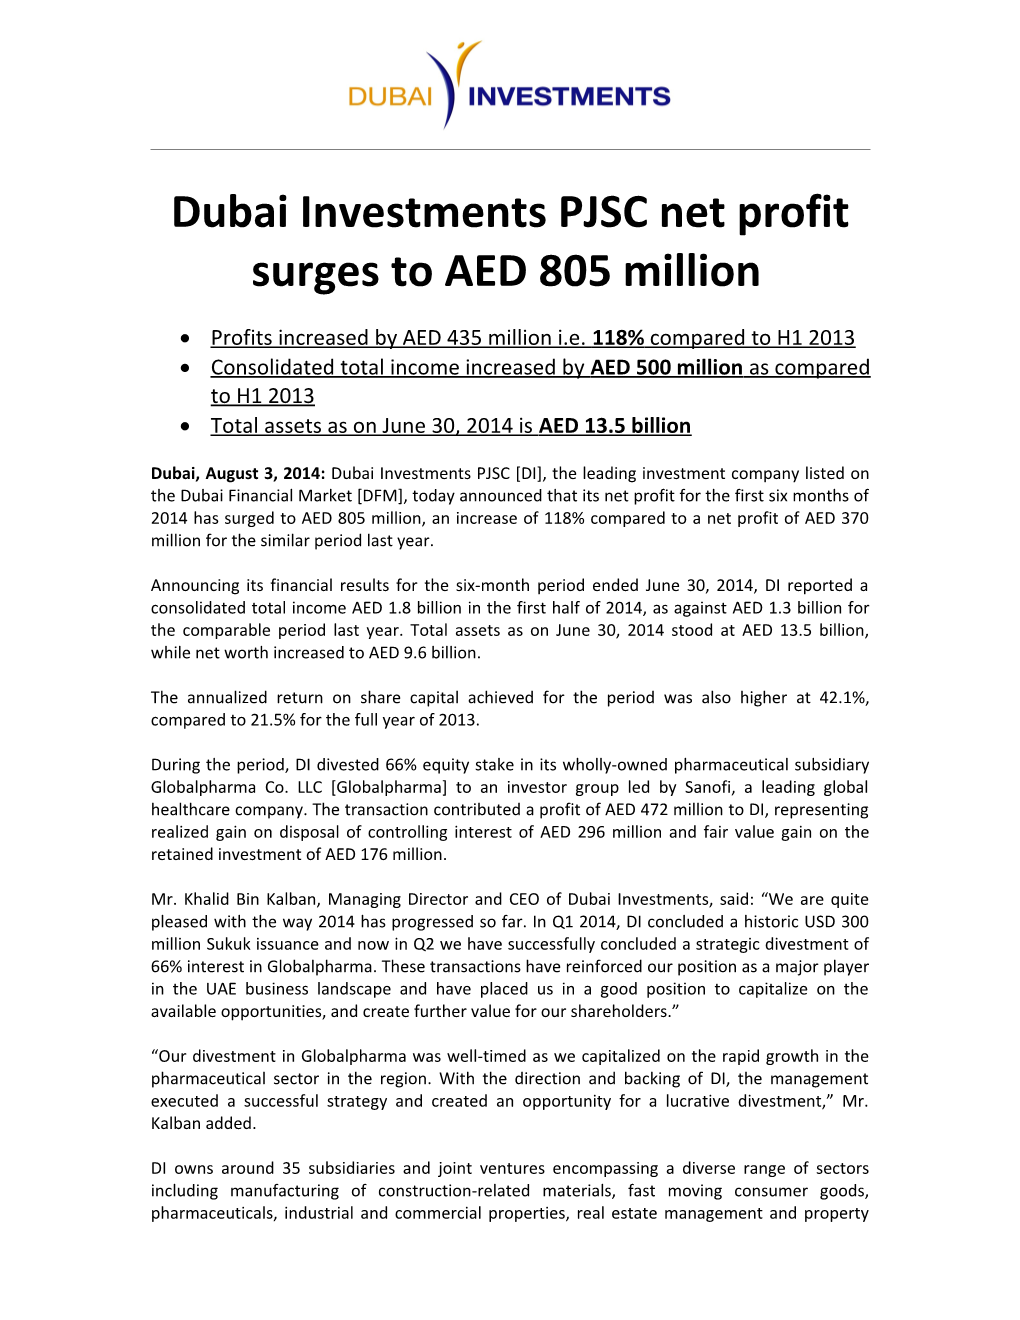 Dubai Investments PJSC Reports Revenue of AED 2